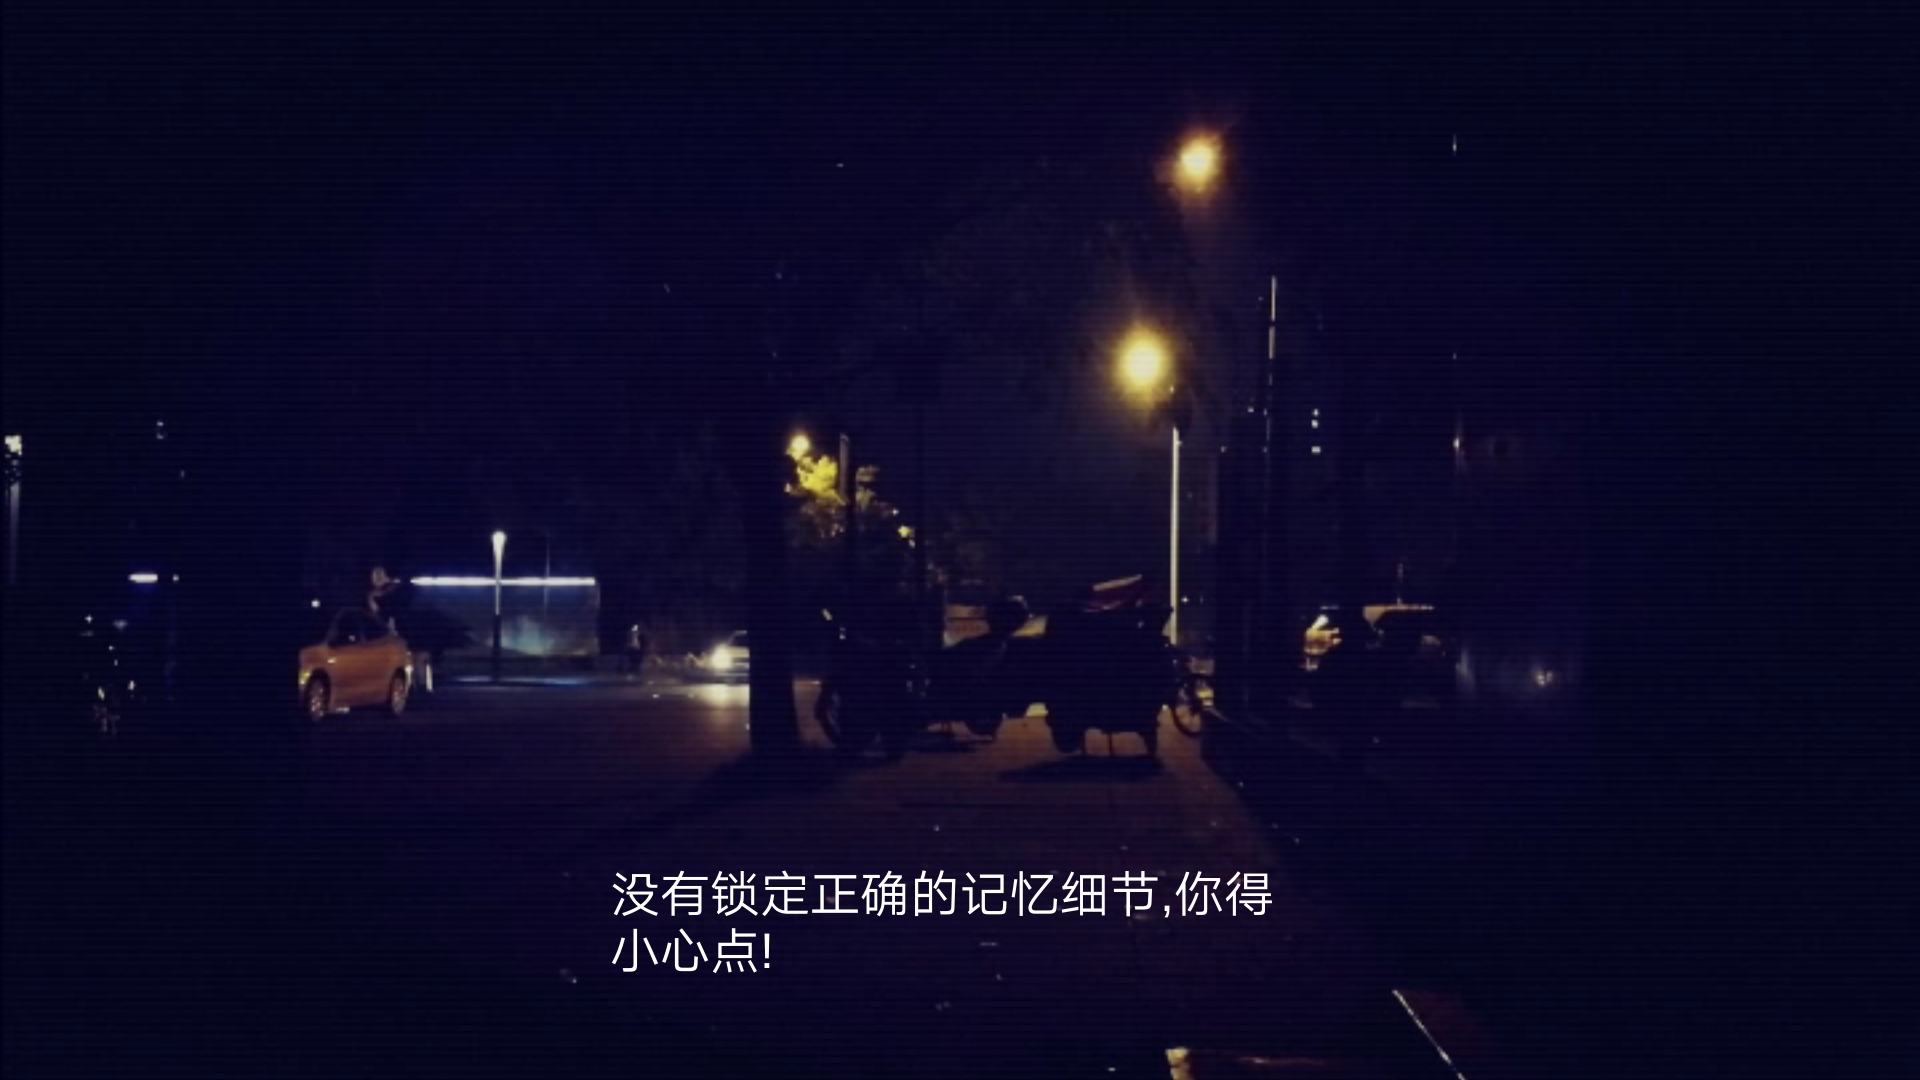 搜索·迷城掠影/The phantom of the city screenshot